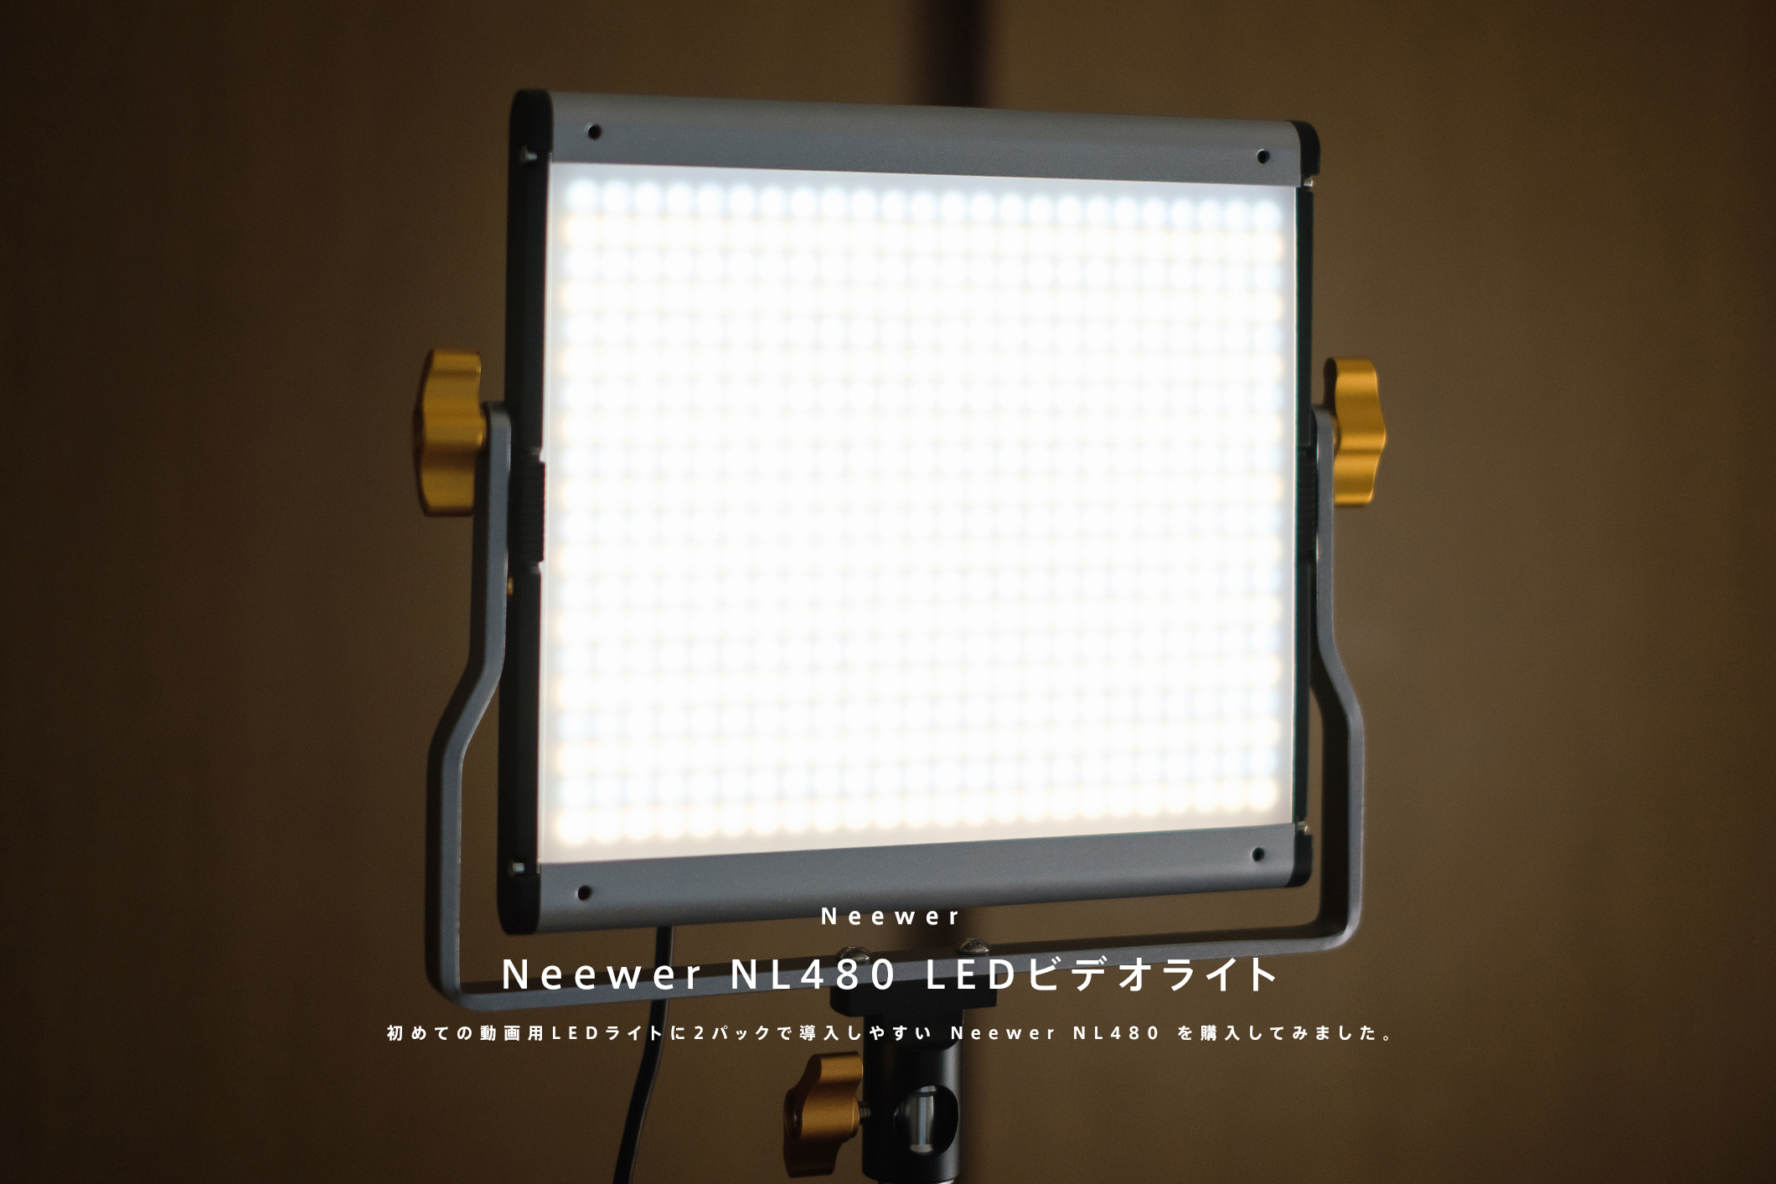 初めての動画用LEDライトに2パックで導入しやすい Neewer NL480 を購入 